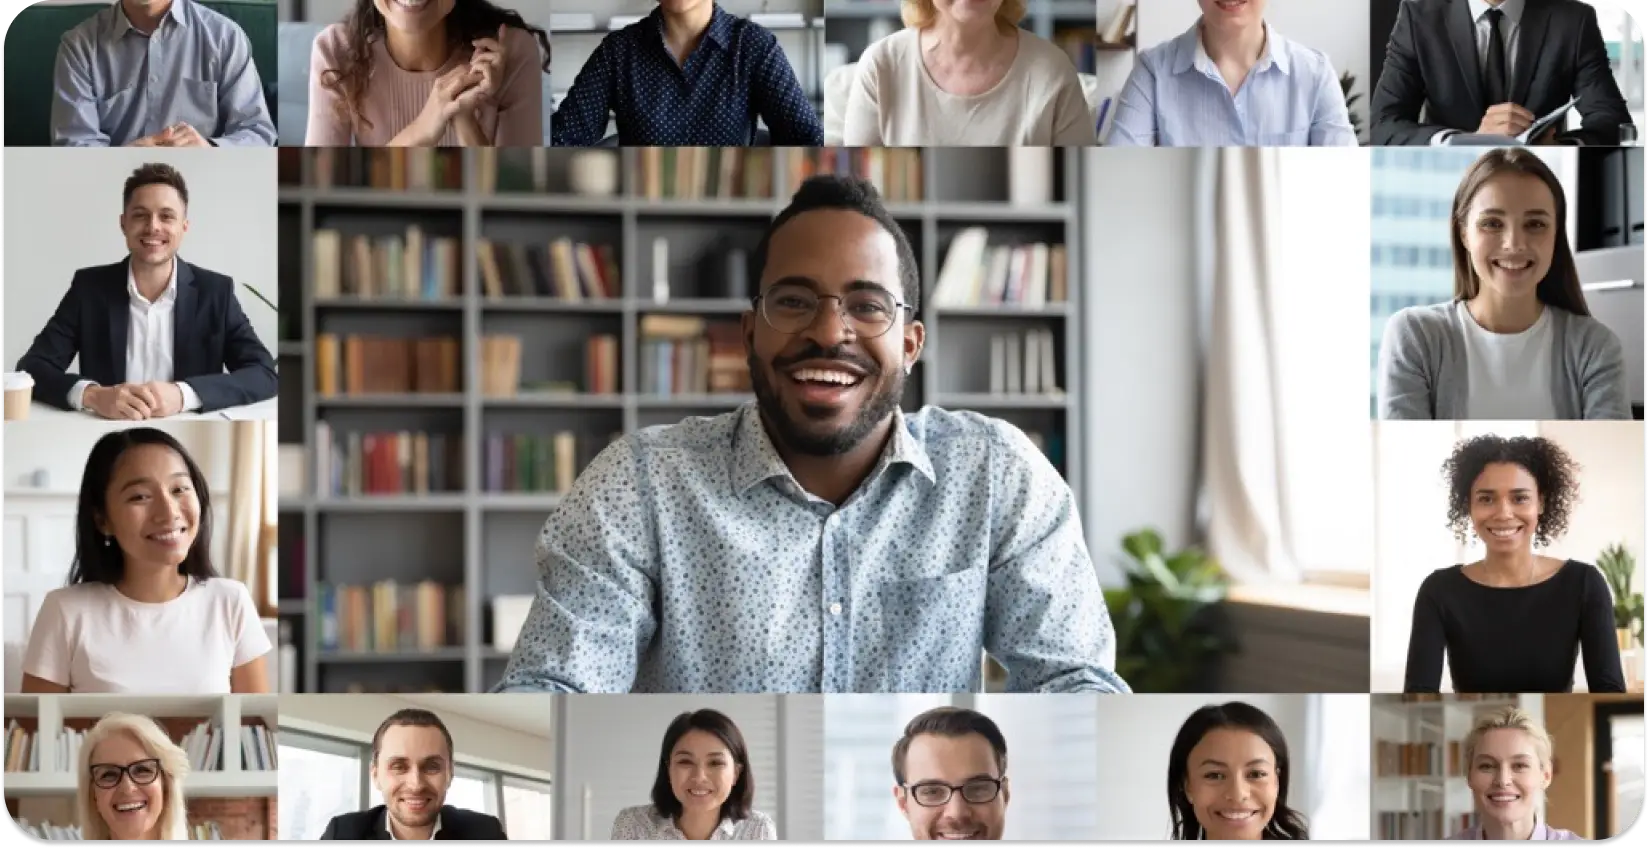 Kolaż różnych profesjonalistów na wirtualnym spotkaniu, prezentujący inkluzywność w miejscu pracy.